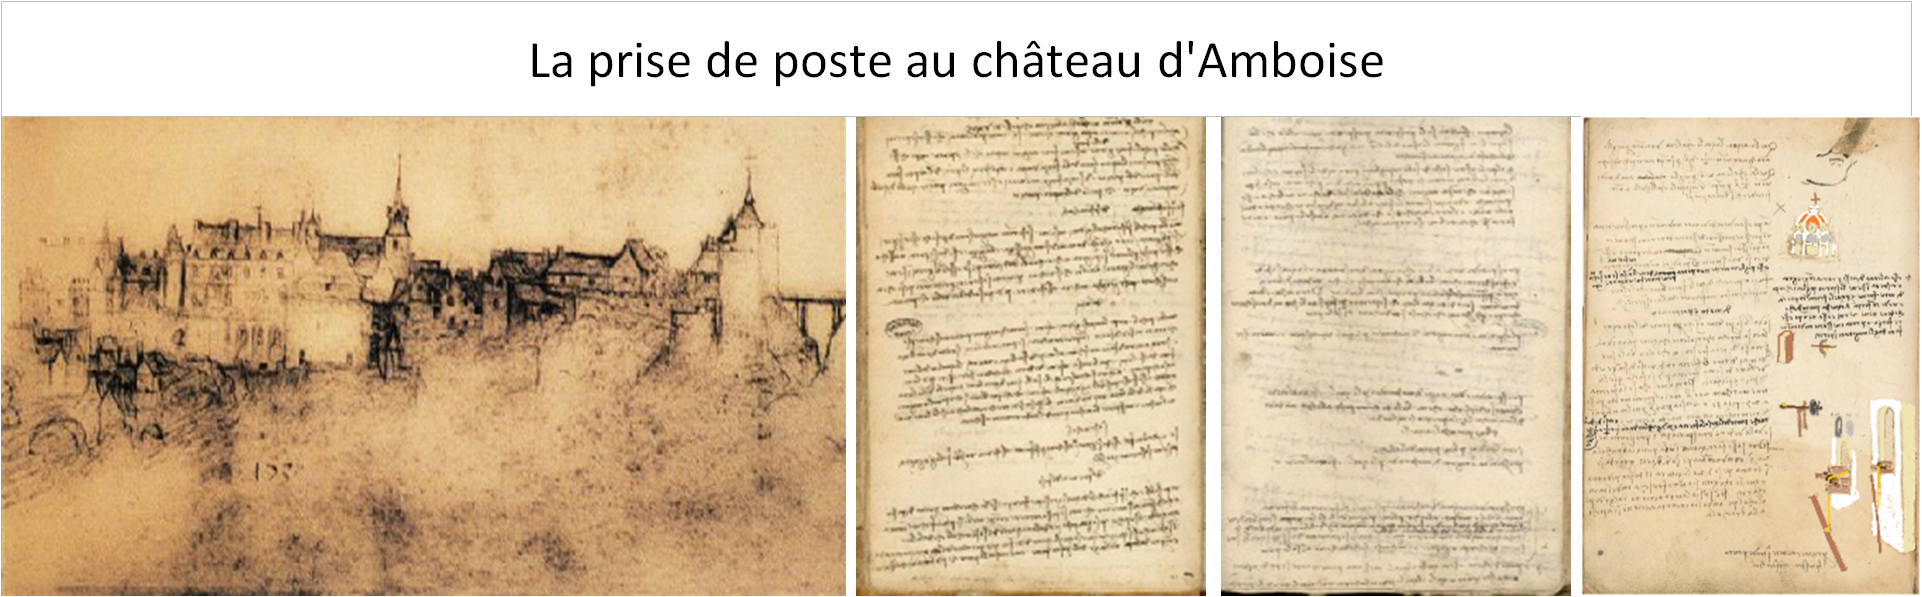 La prise de poste de Léonard au château d'Amboise